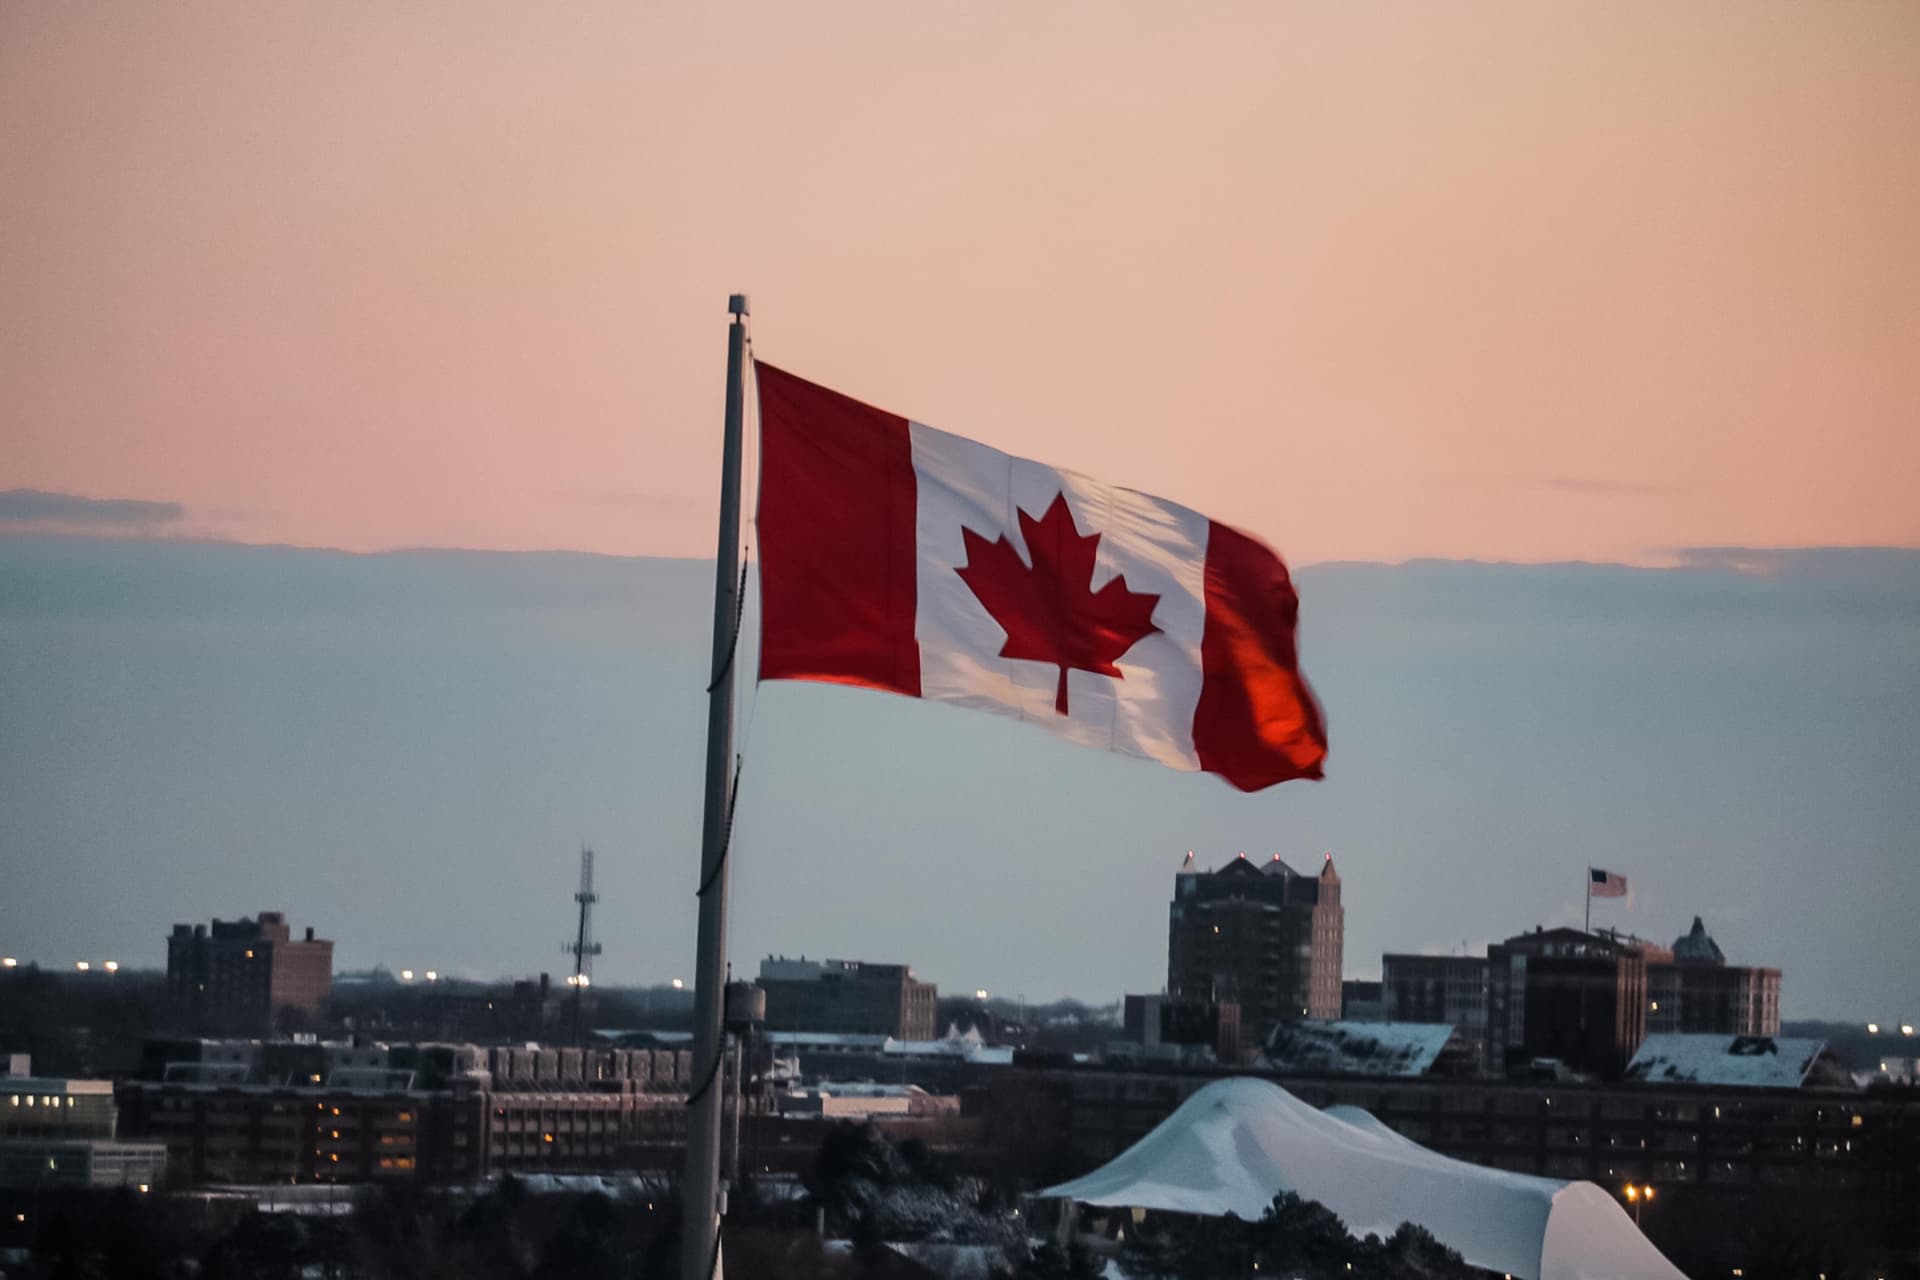 Bandiera del Canada: storia e significato